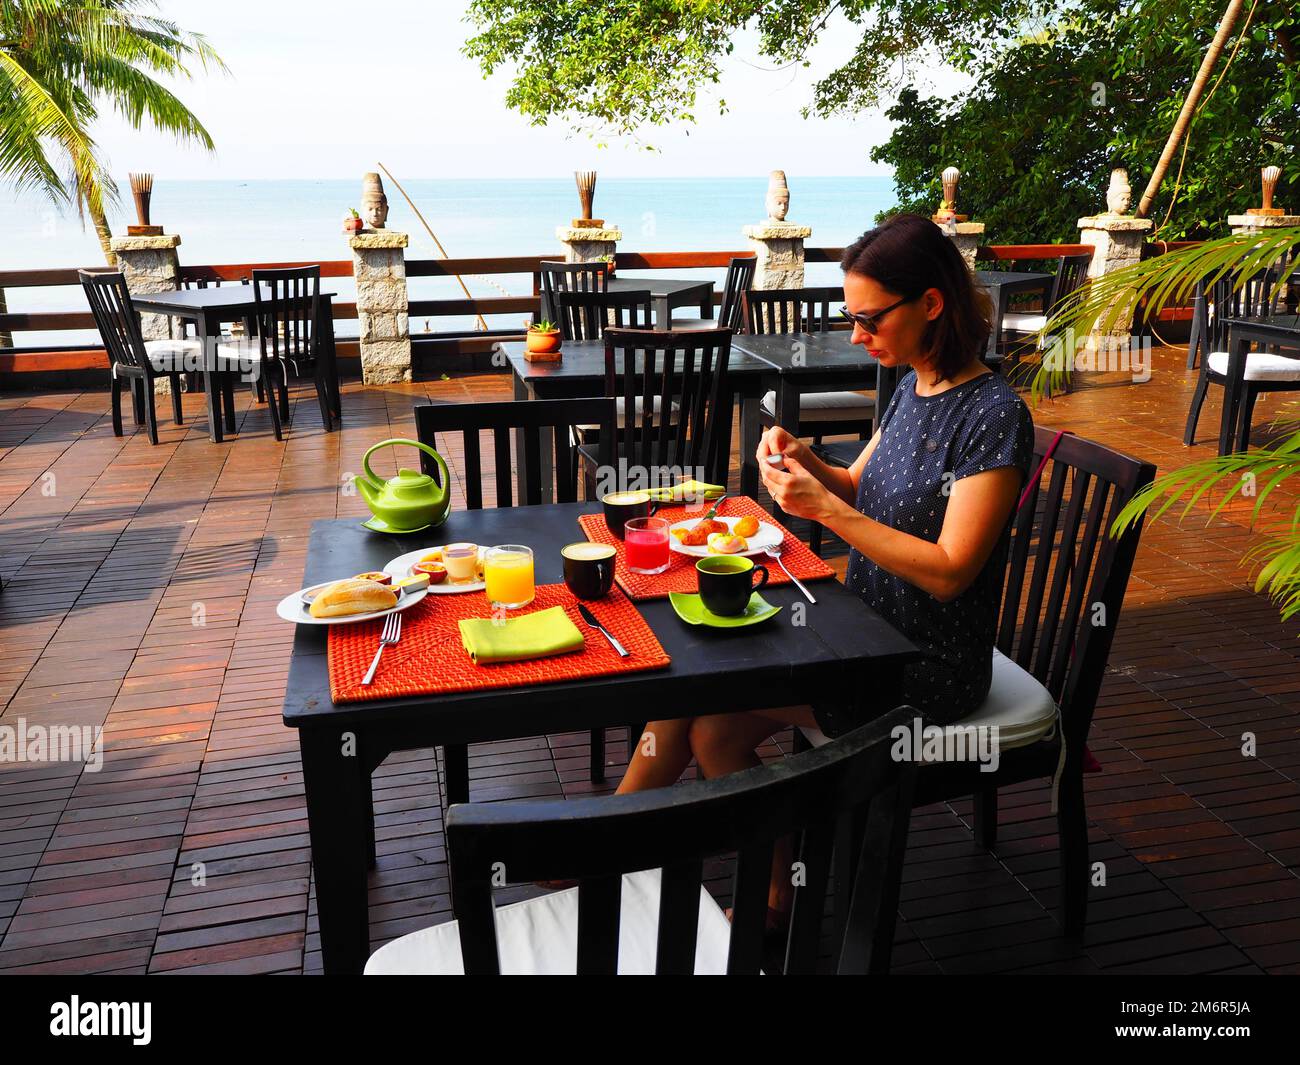 La ragazza che ha colazione, Vietnam #Asia #Vietnam #aroundtheworld #SouthEastAsia #slowtravel #loveasia Foto Stock